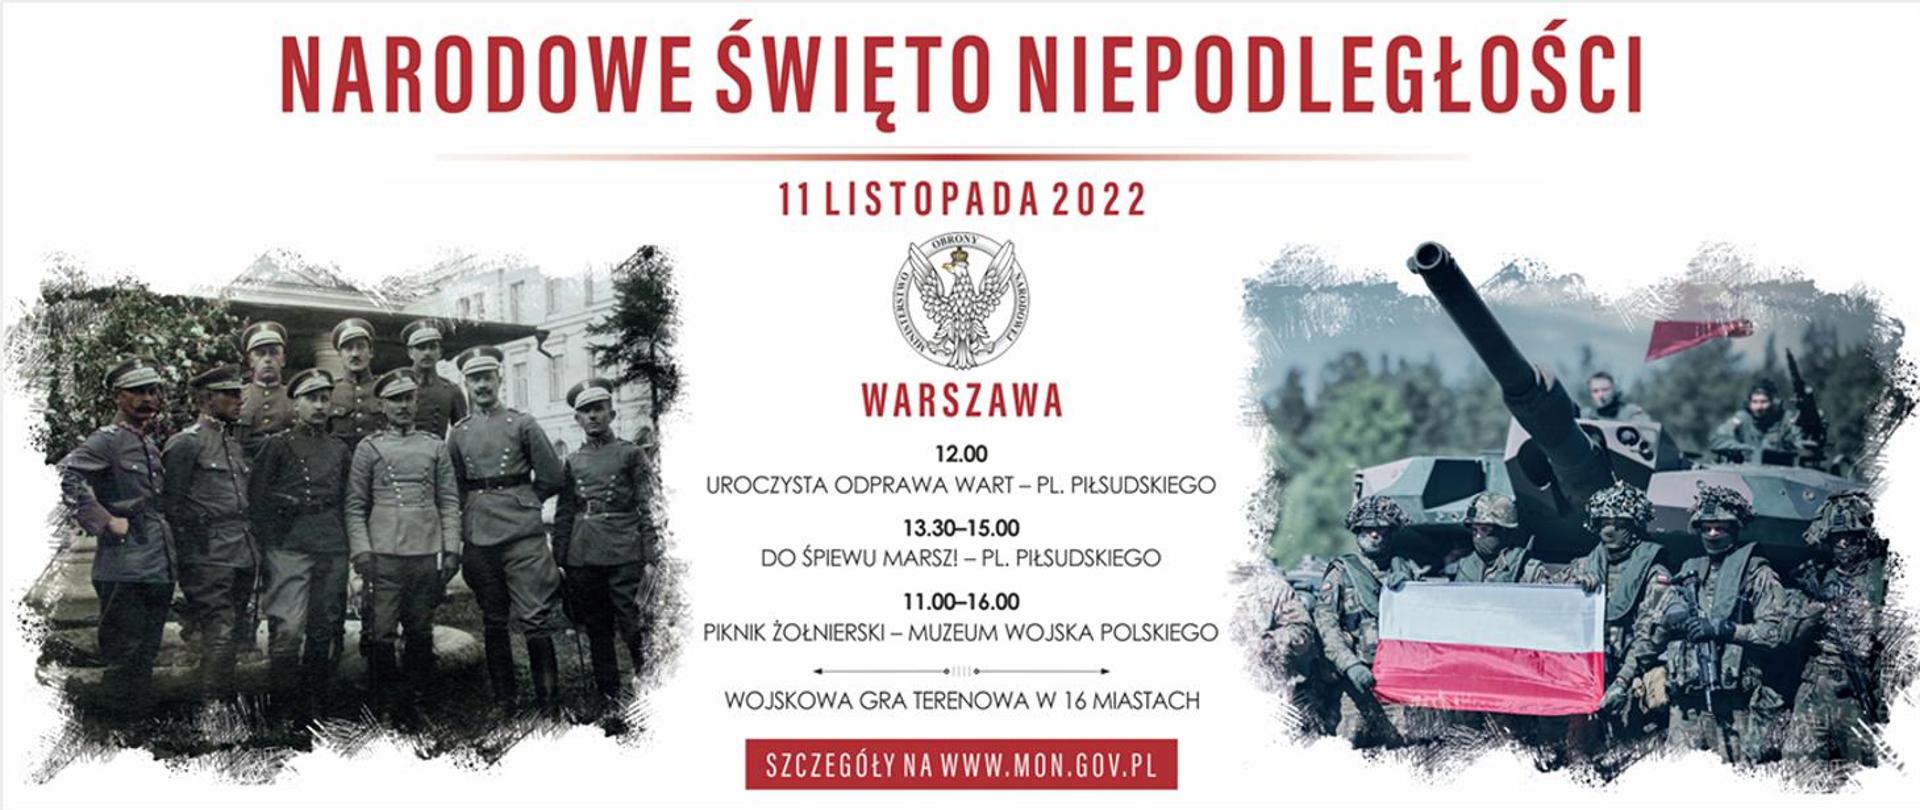 Wspólnie uczcijmy 104. rocznicę odzyskania przez Polskę niepodległości